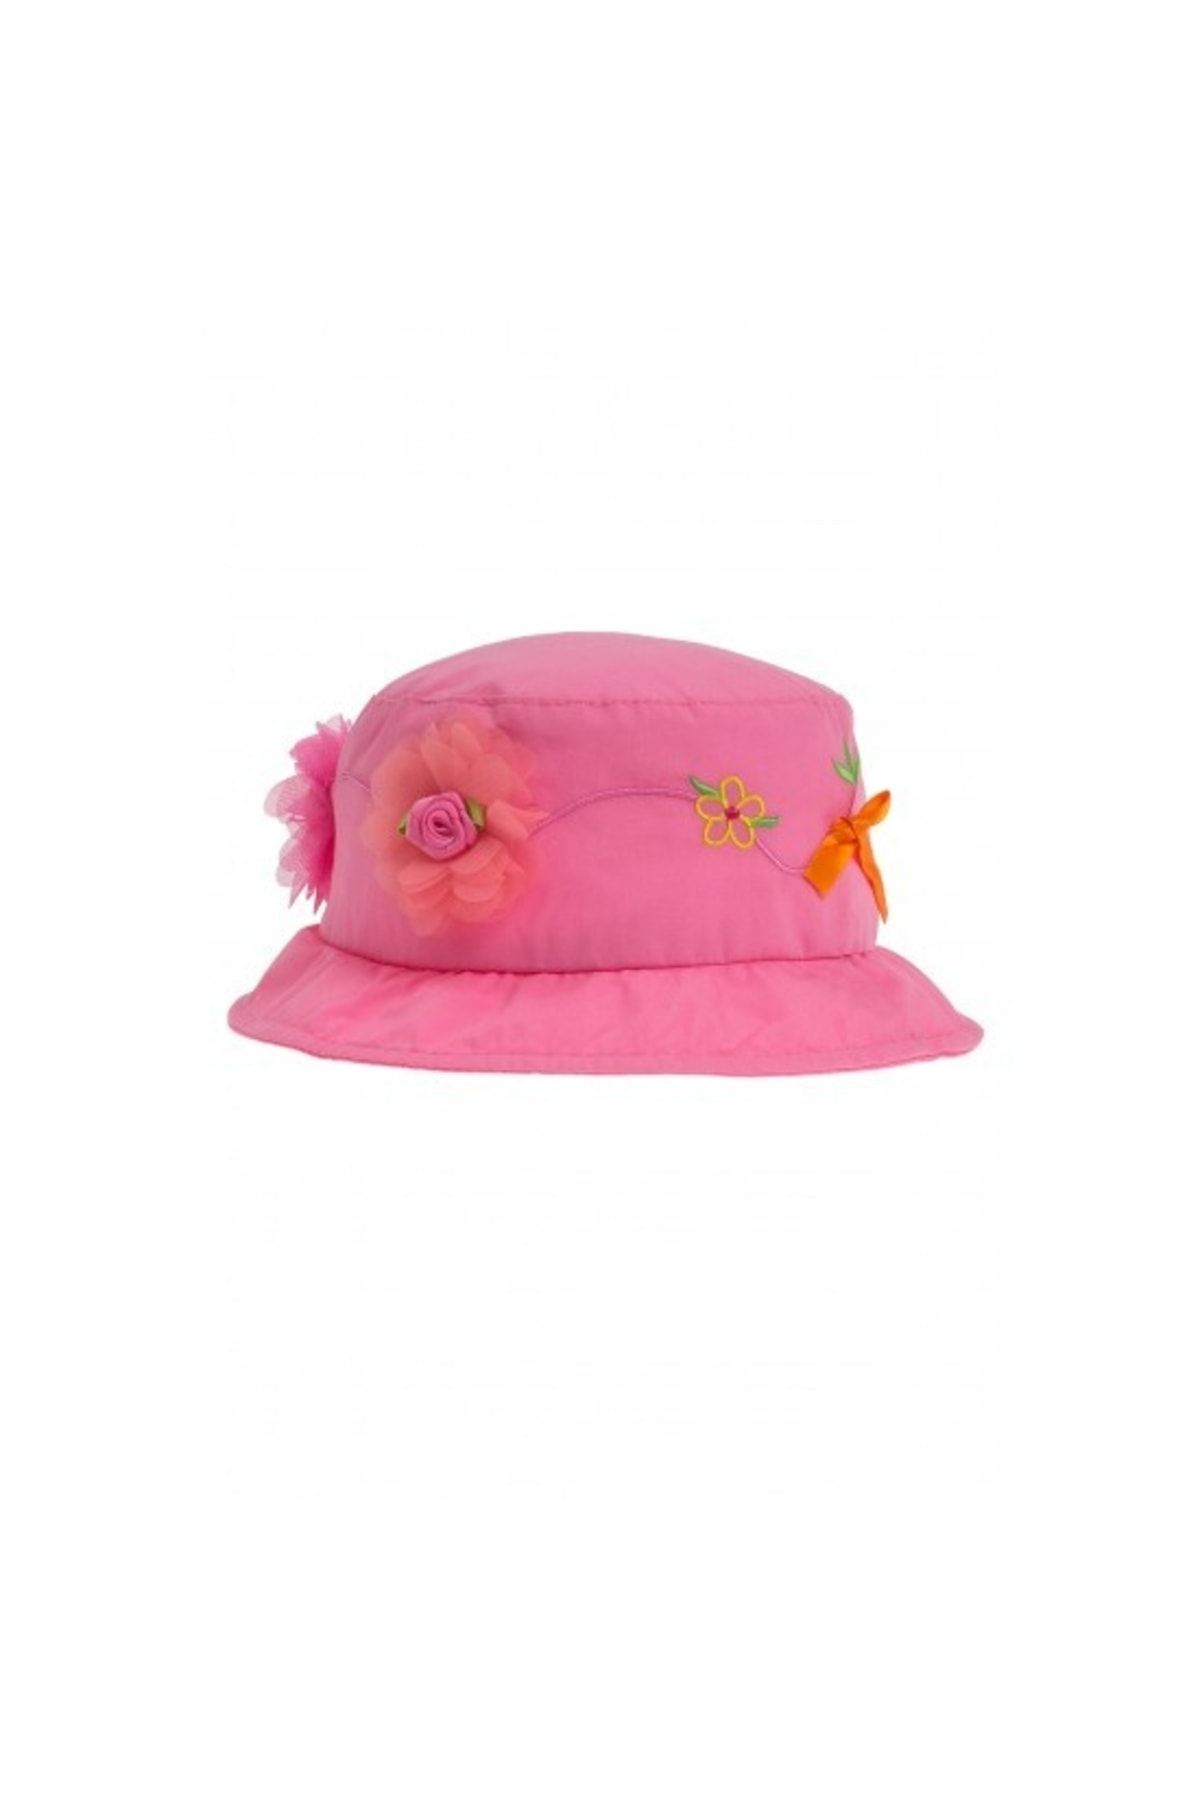 Bay Şapkacı Kız Çocuk Çiçekli Bermuda Pembe Şapka 2113